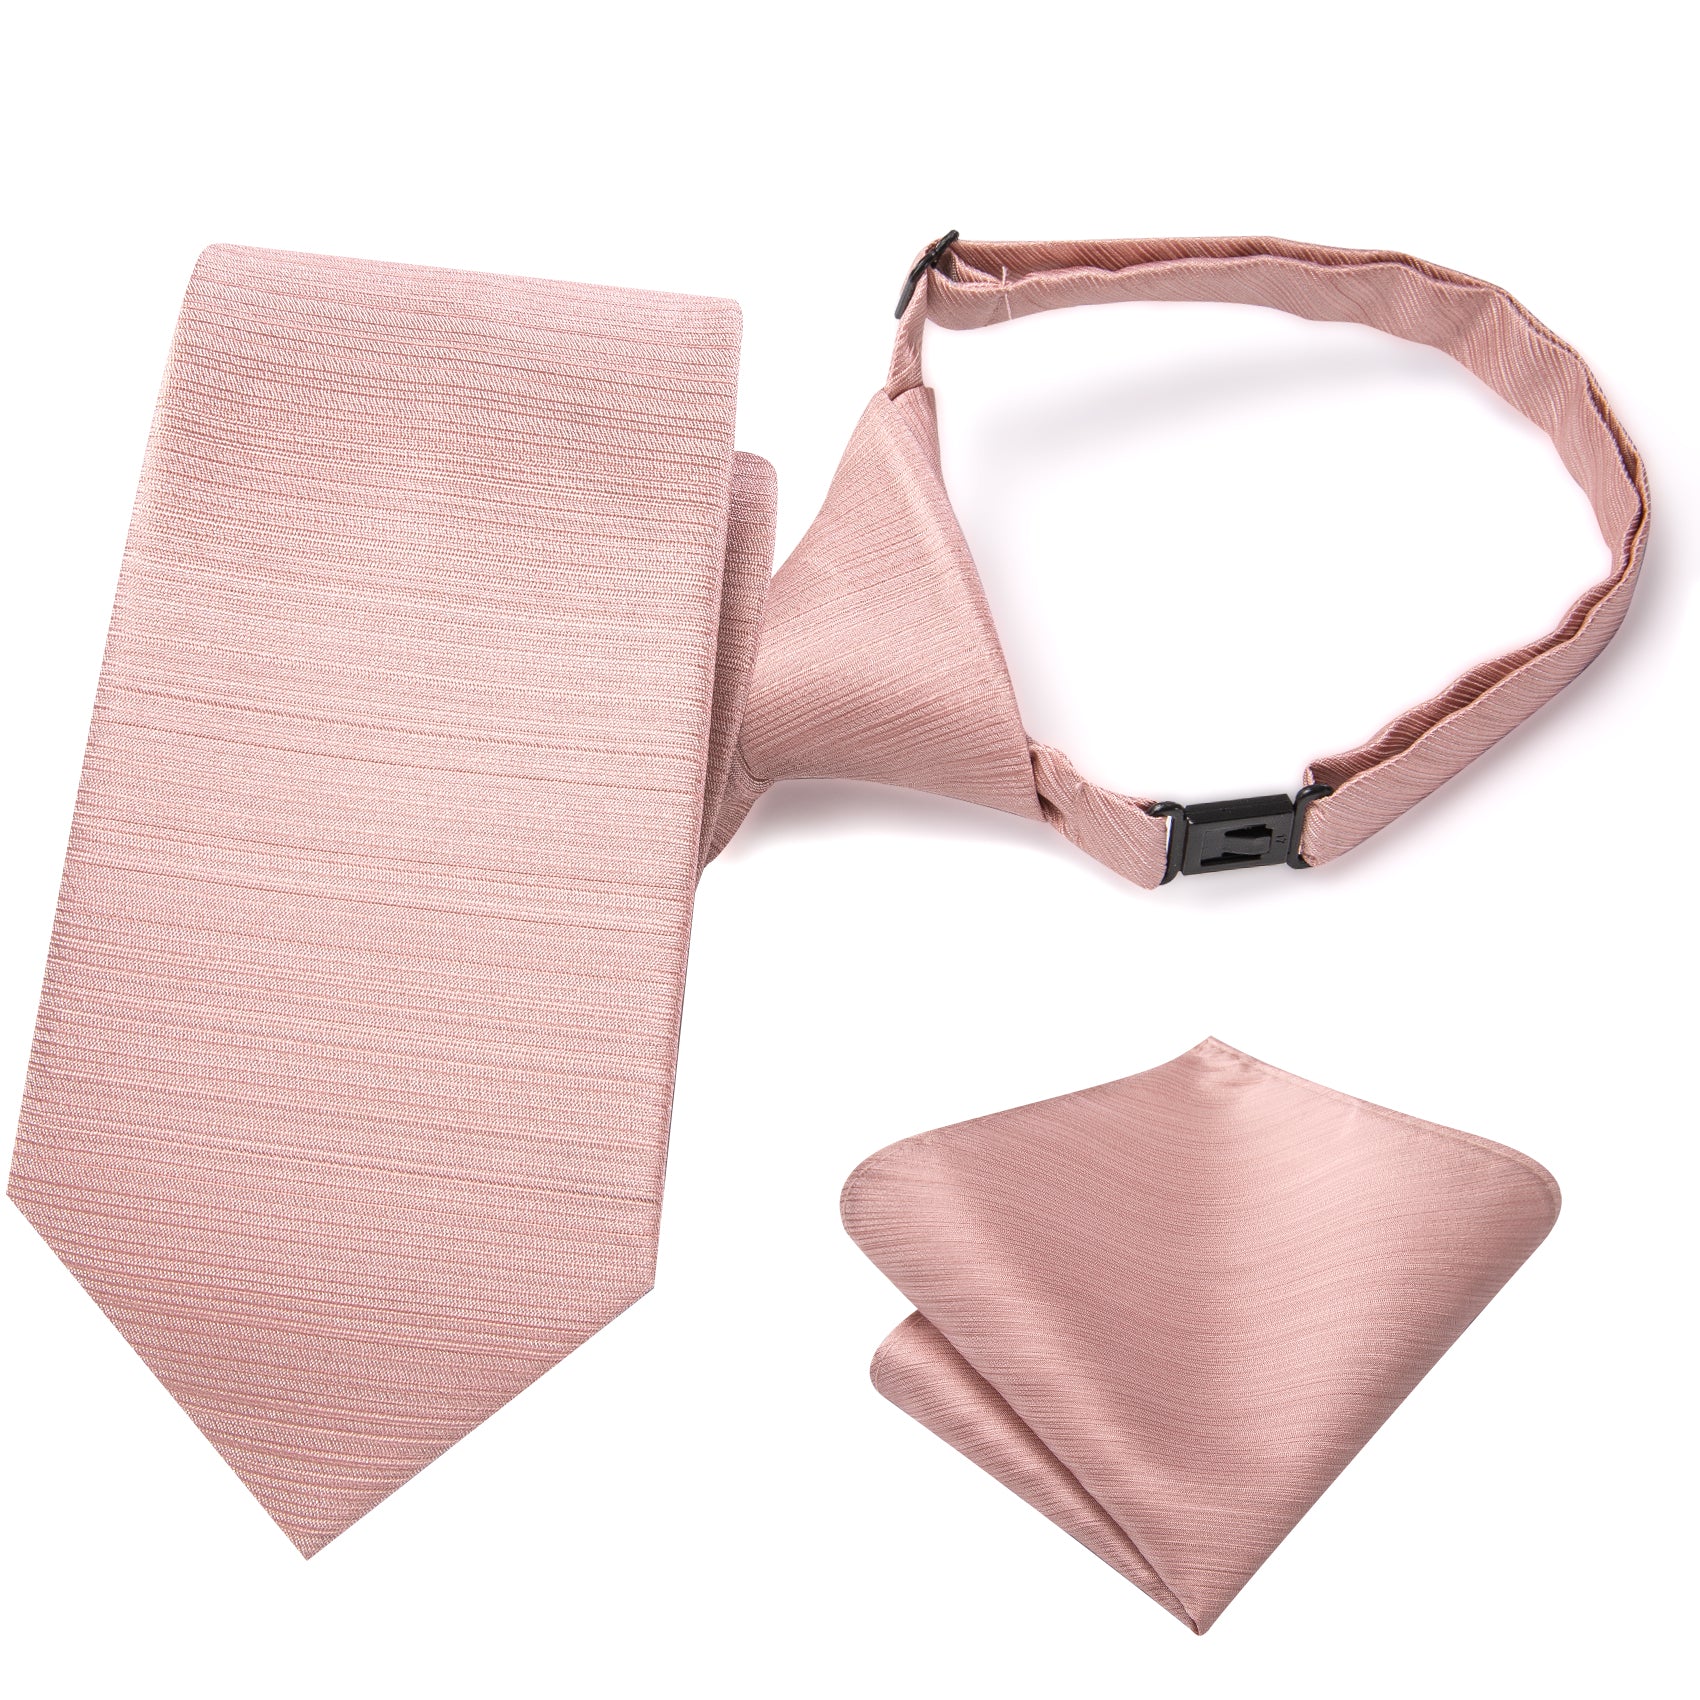 Pink Solid Pre-tied Adjustable Tie Pocket Square